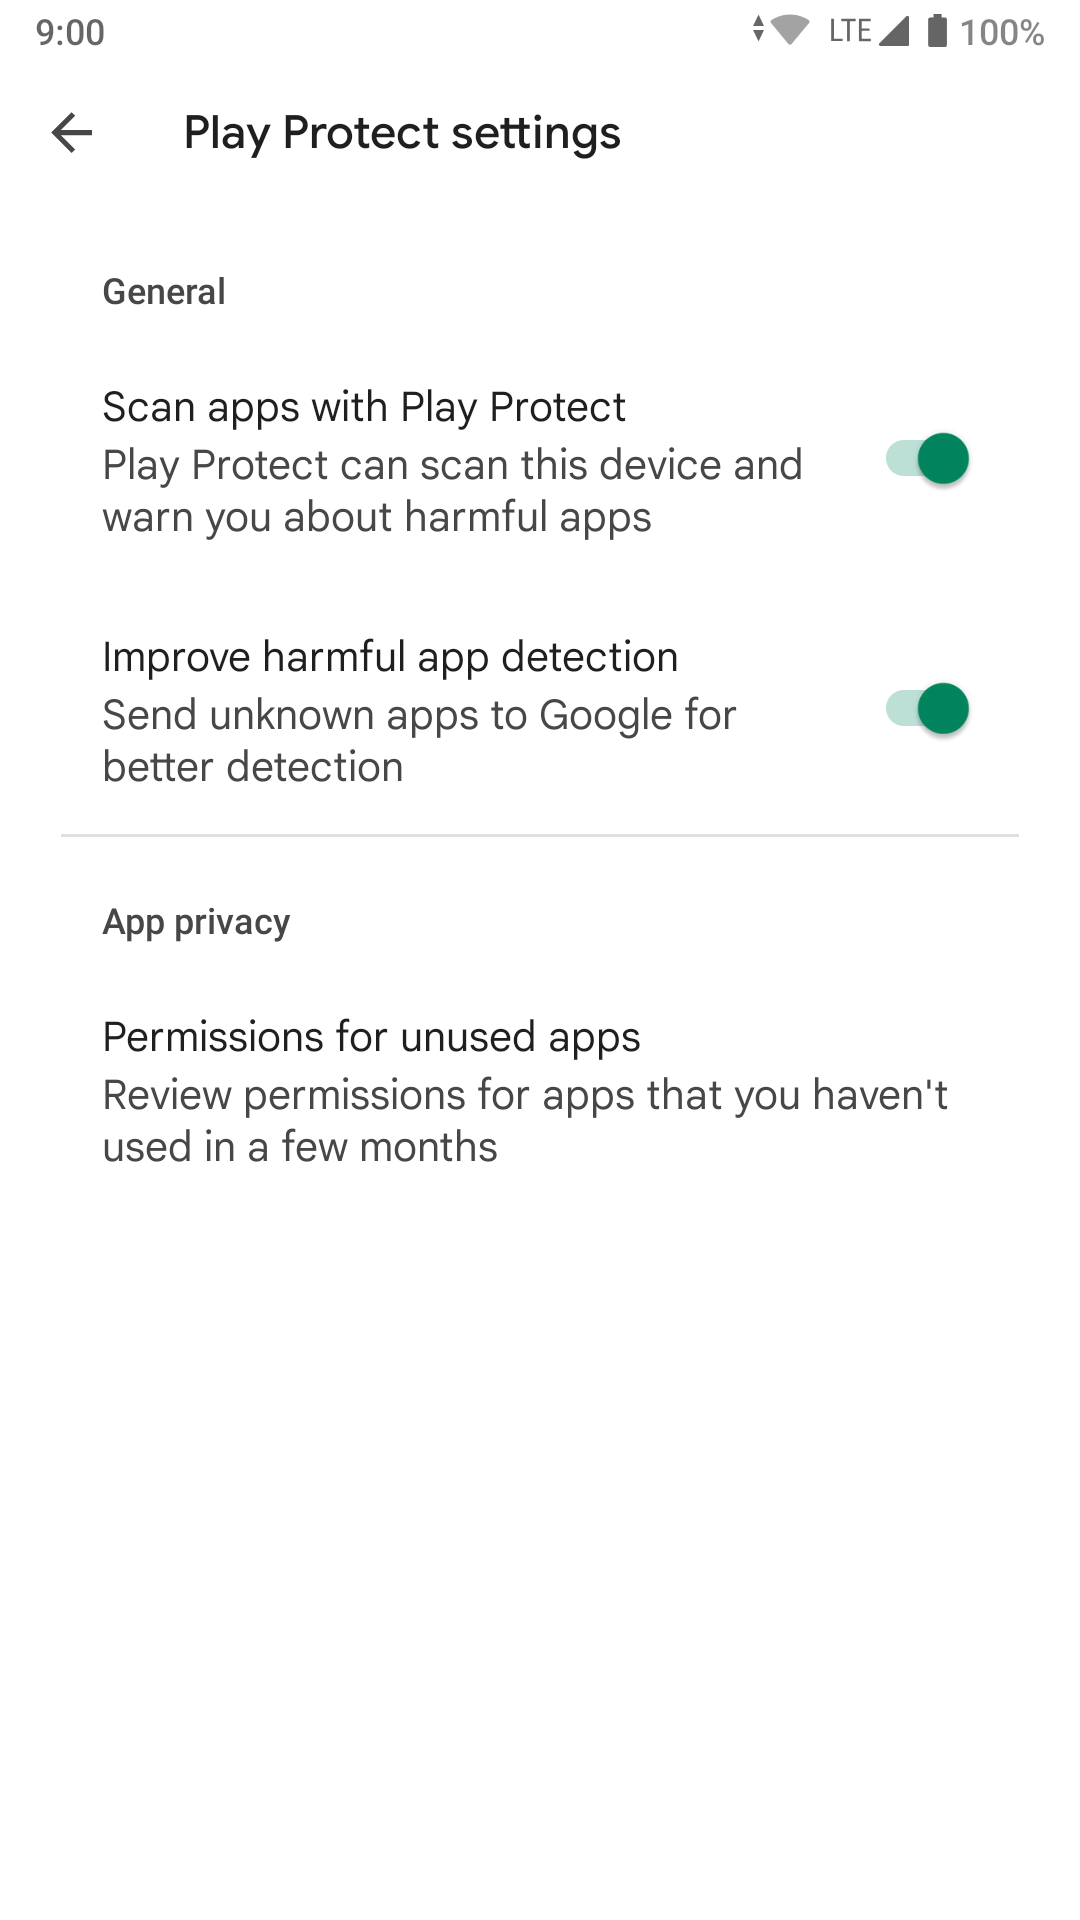 Play Protect - Auto remove permission